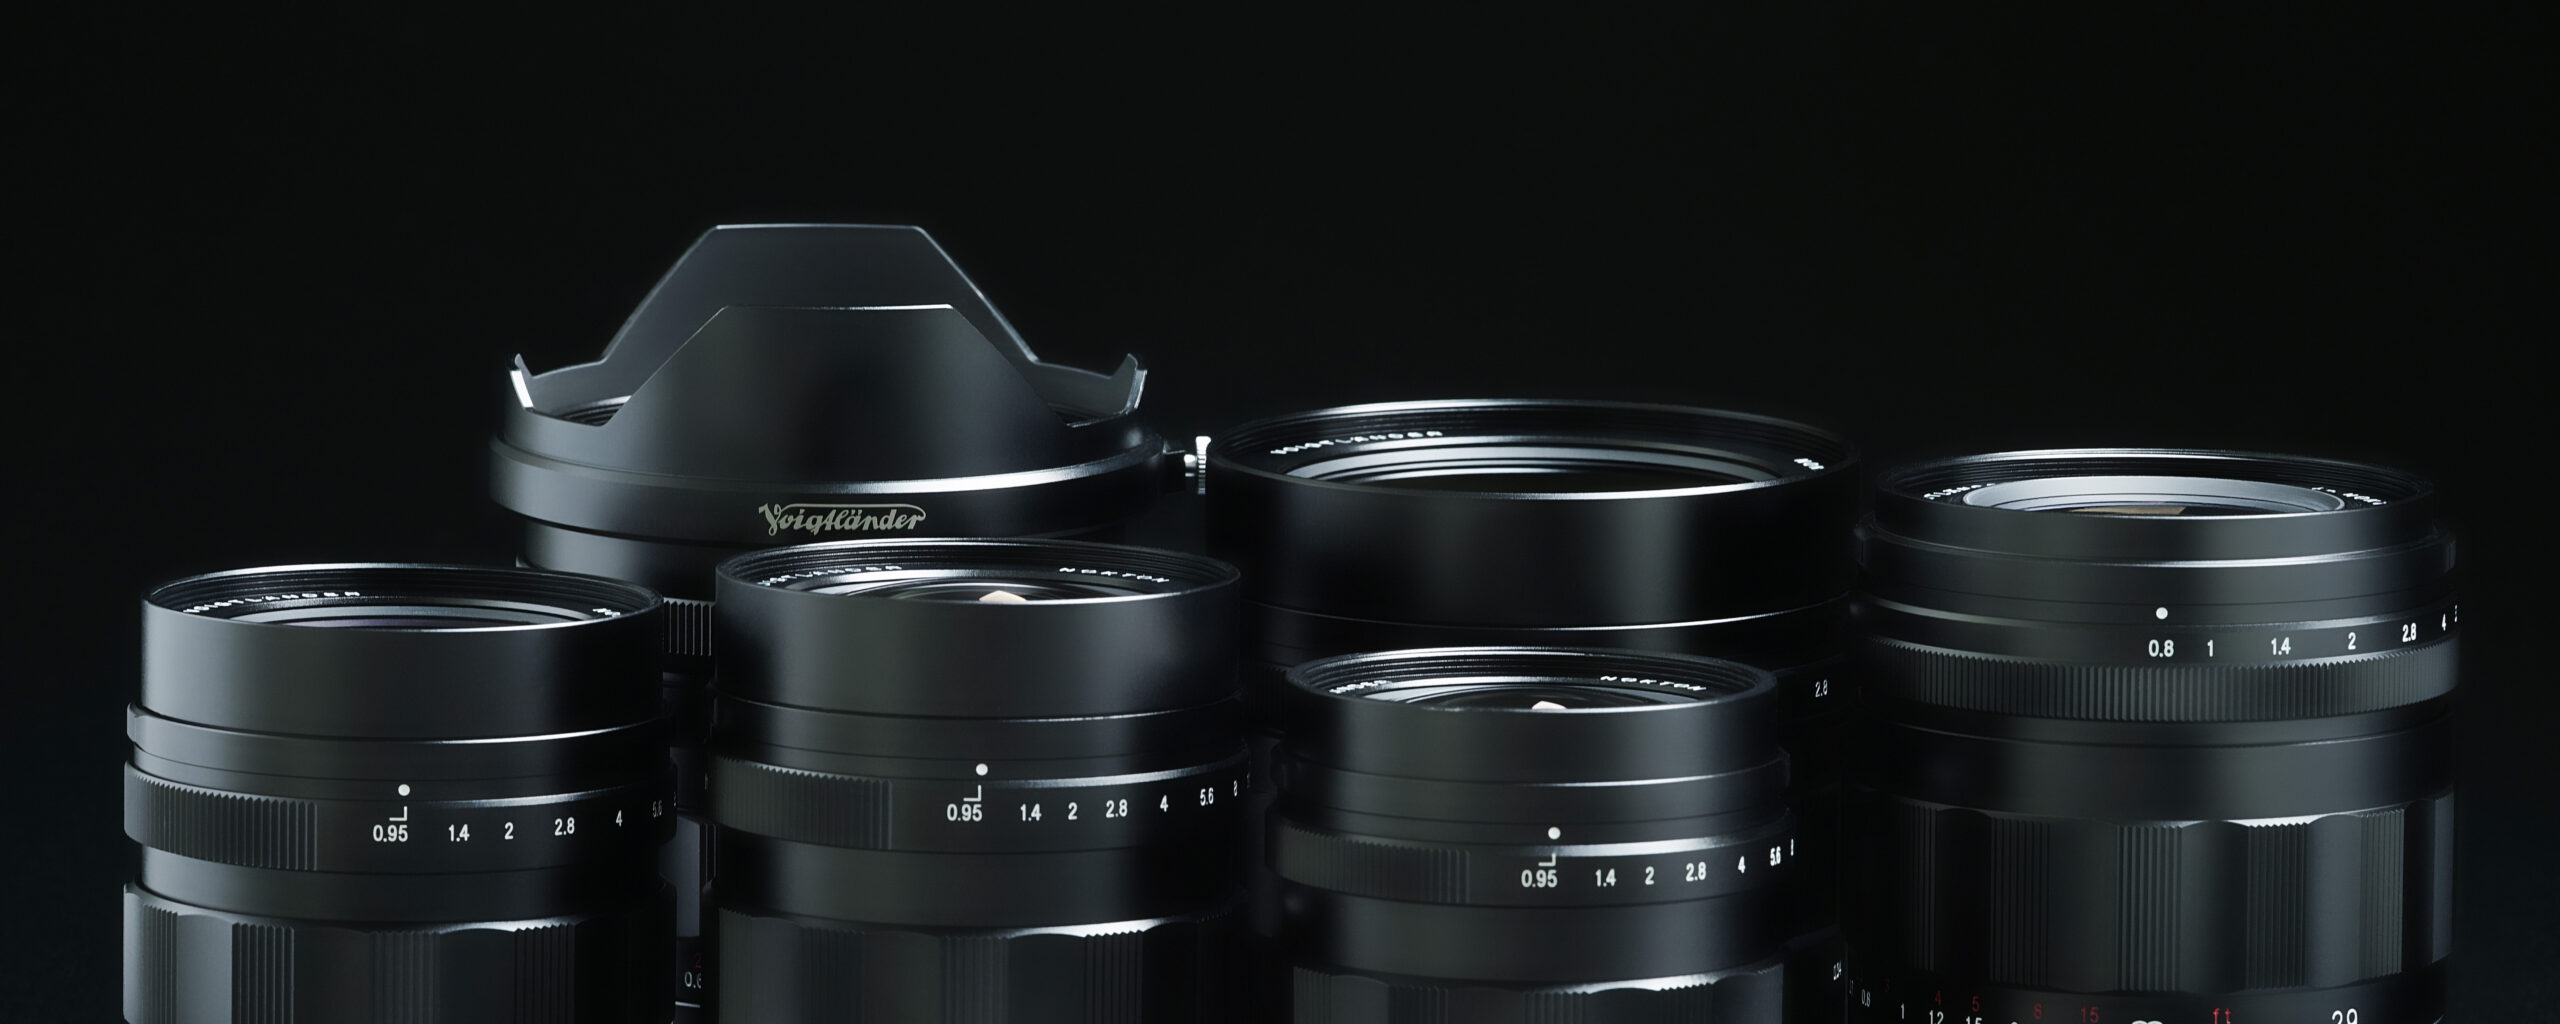 VoightLander 単焦点レンズ NOKTON 17.5mm F0.95 Micro Four Thirds マイクロフォーサーズ対応 